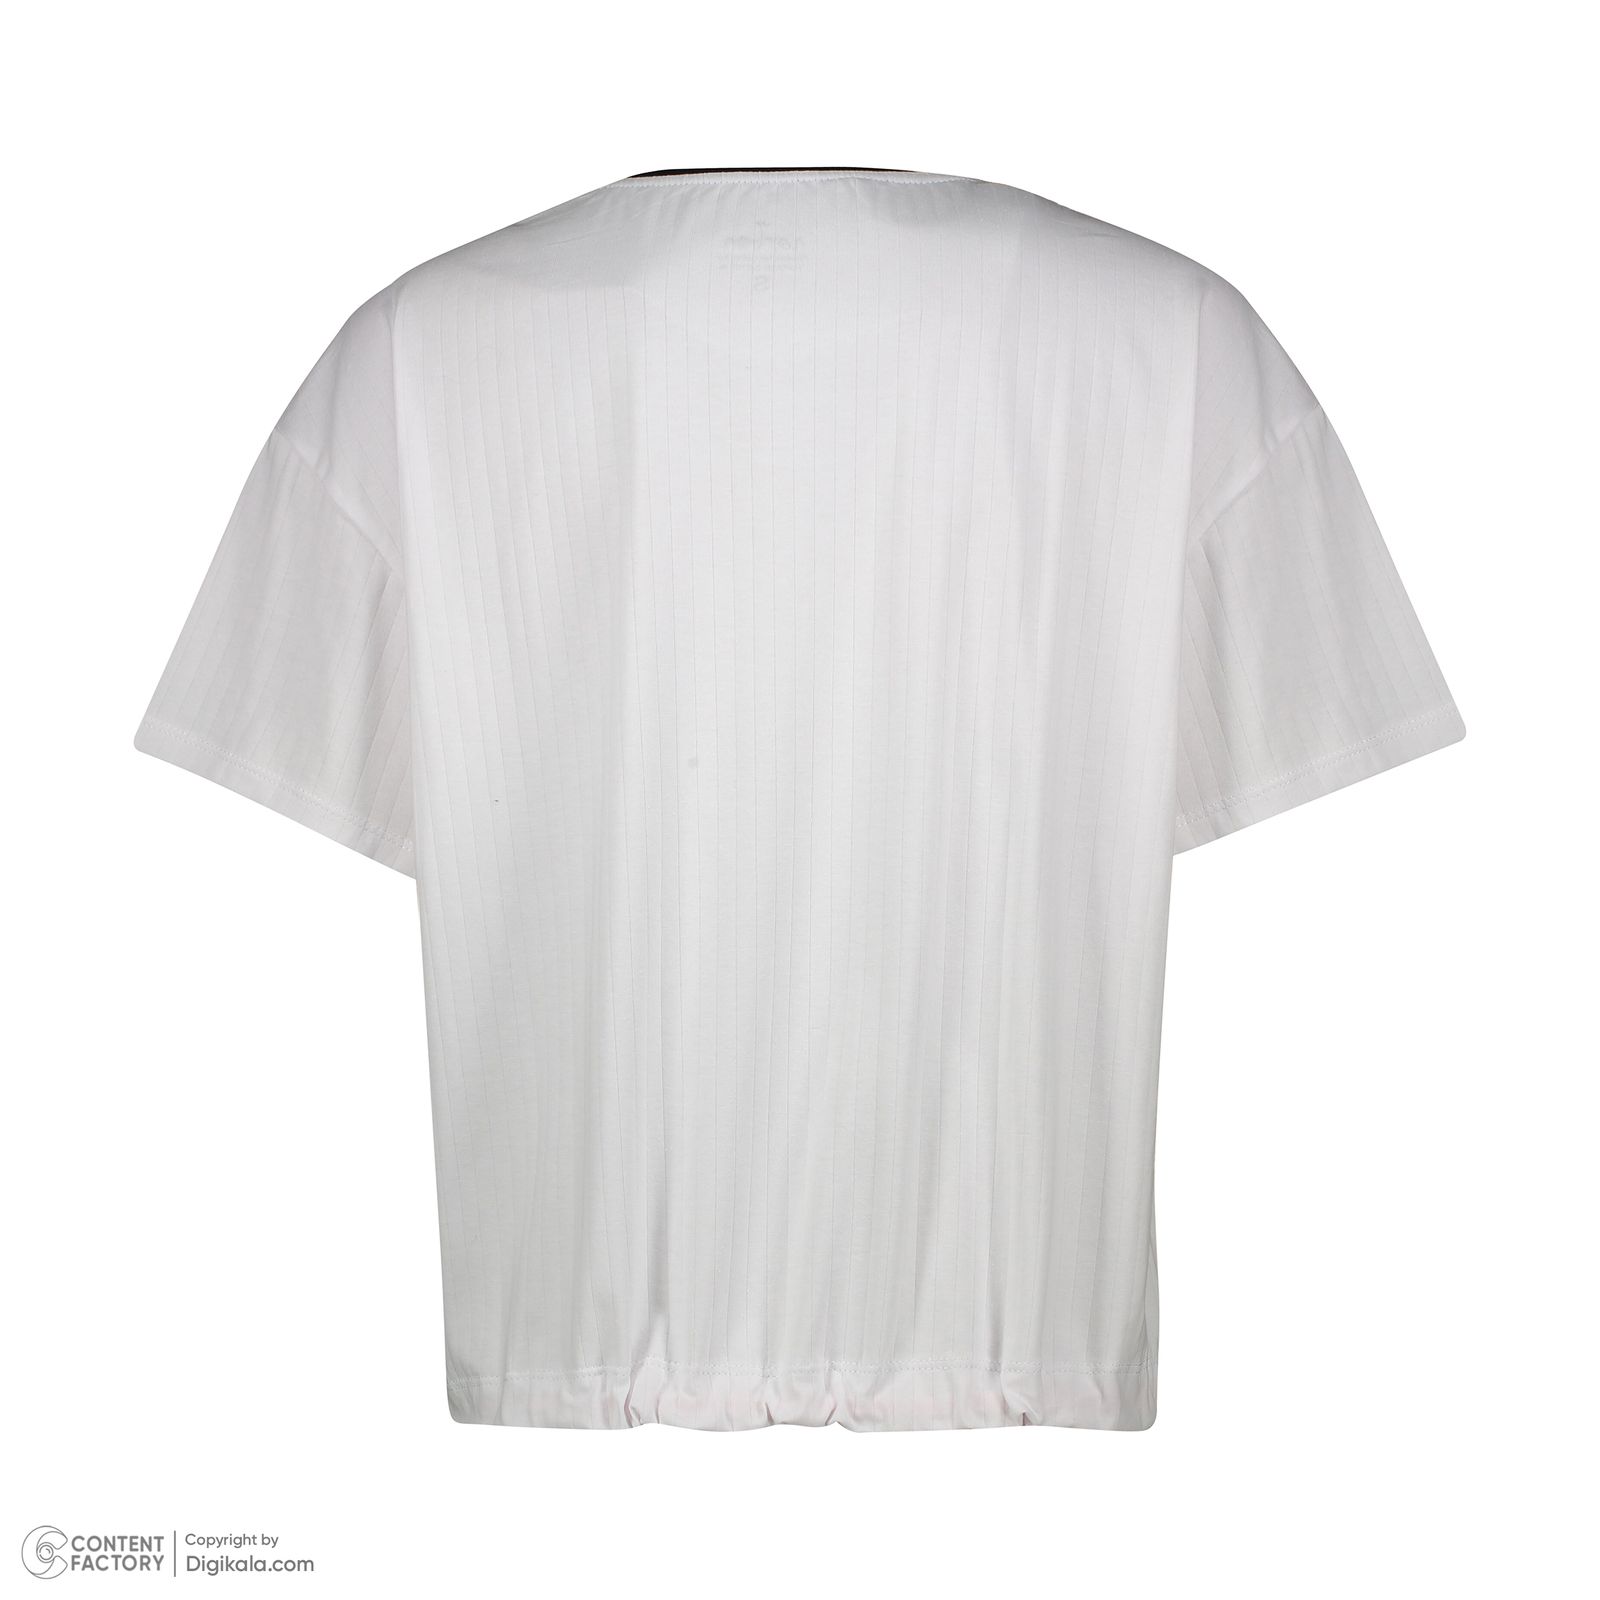 ست تی شرت آستین کوتاه و شلوار زنانه ناربن مدل 1521907 رنگ سفید -  - 10